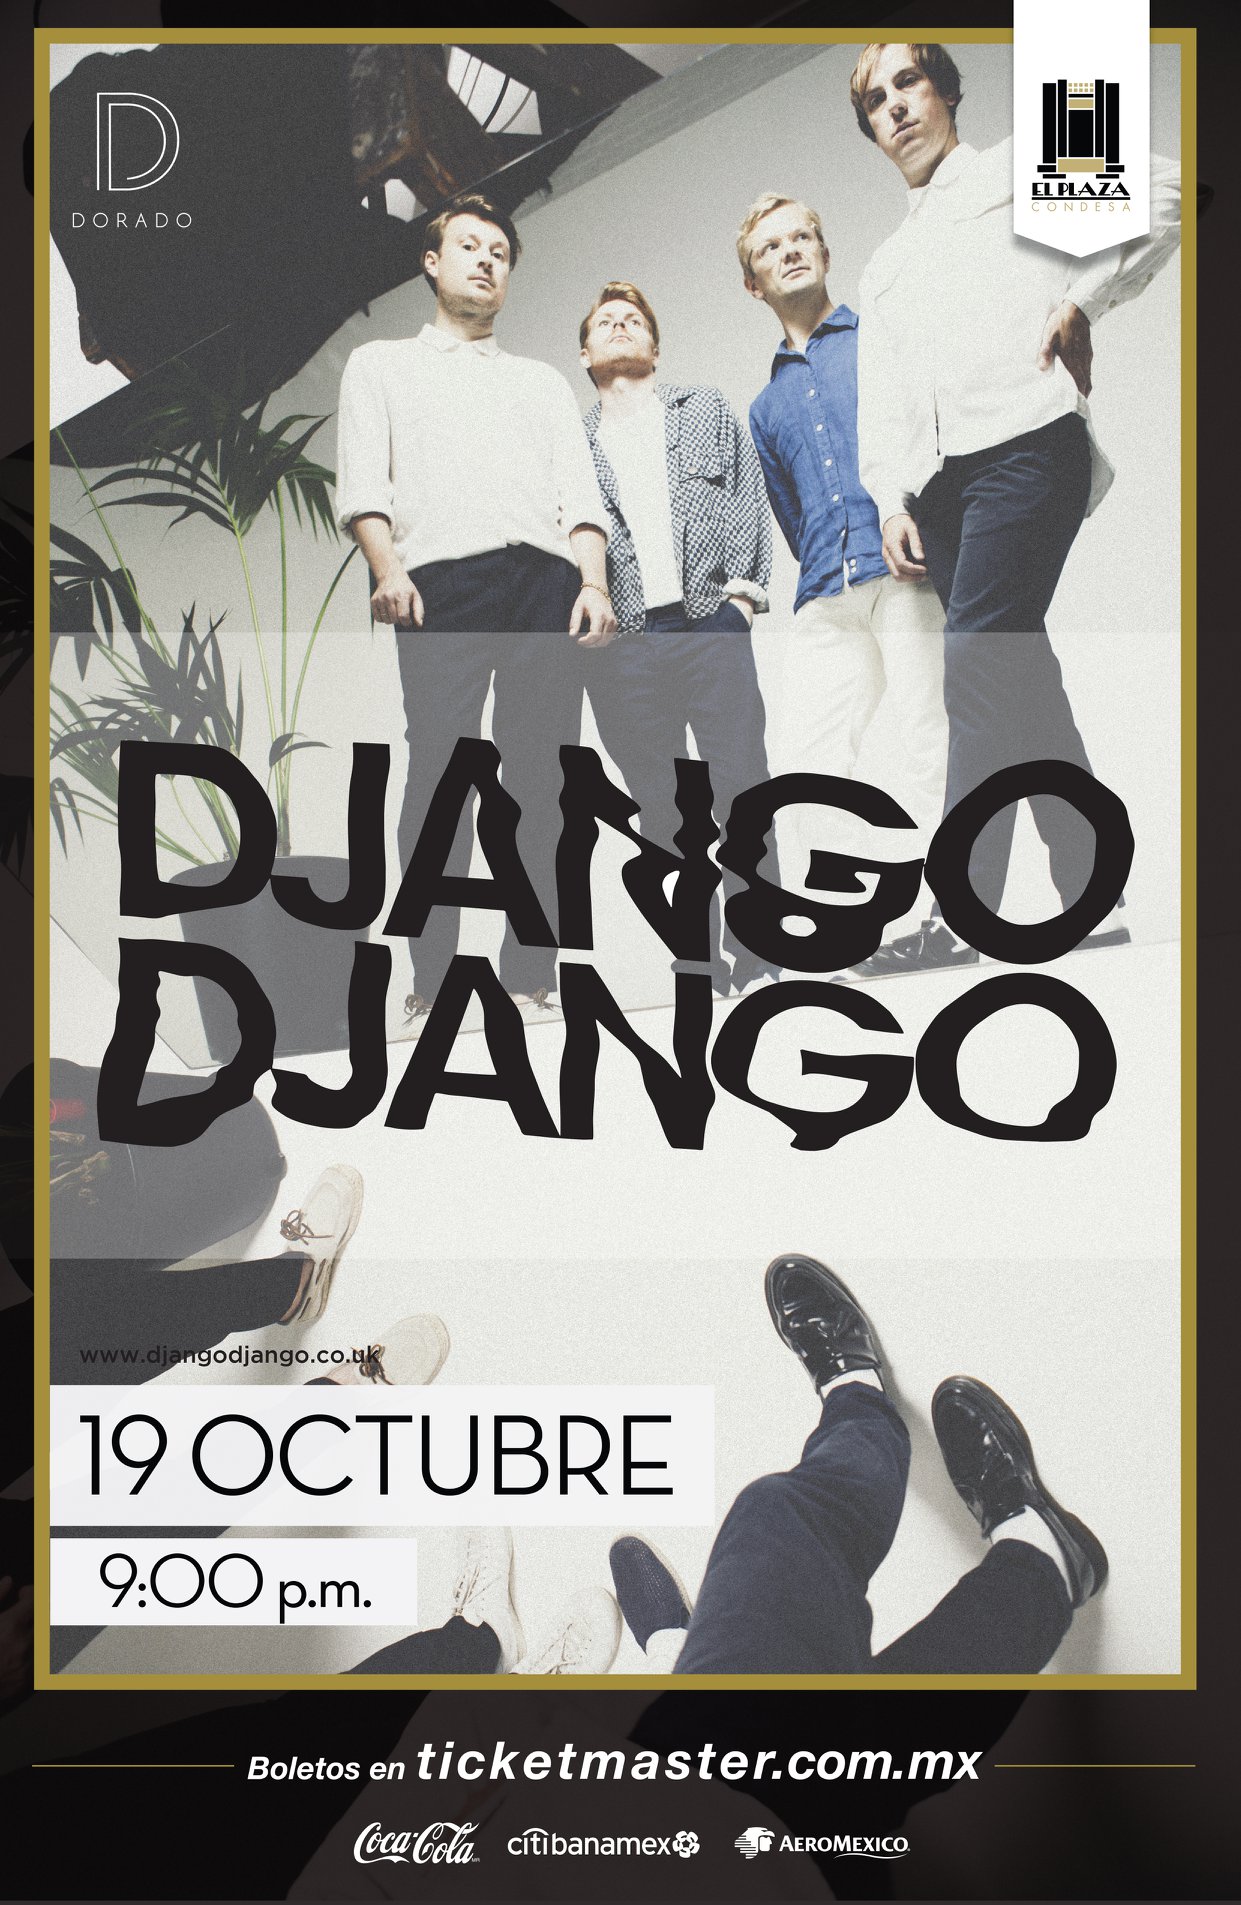 ¡Django Django viene por primera vez a México para un show en El Plaza!